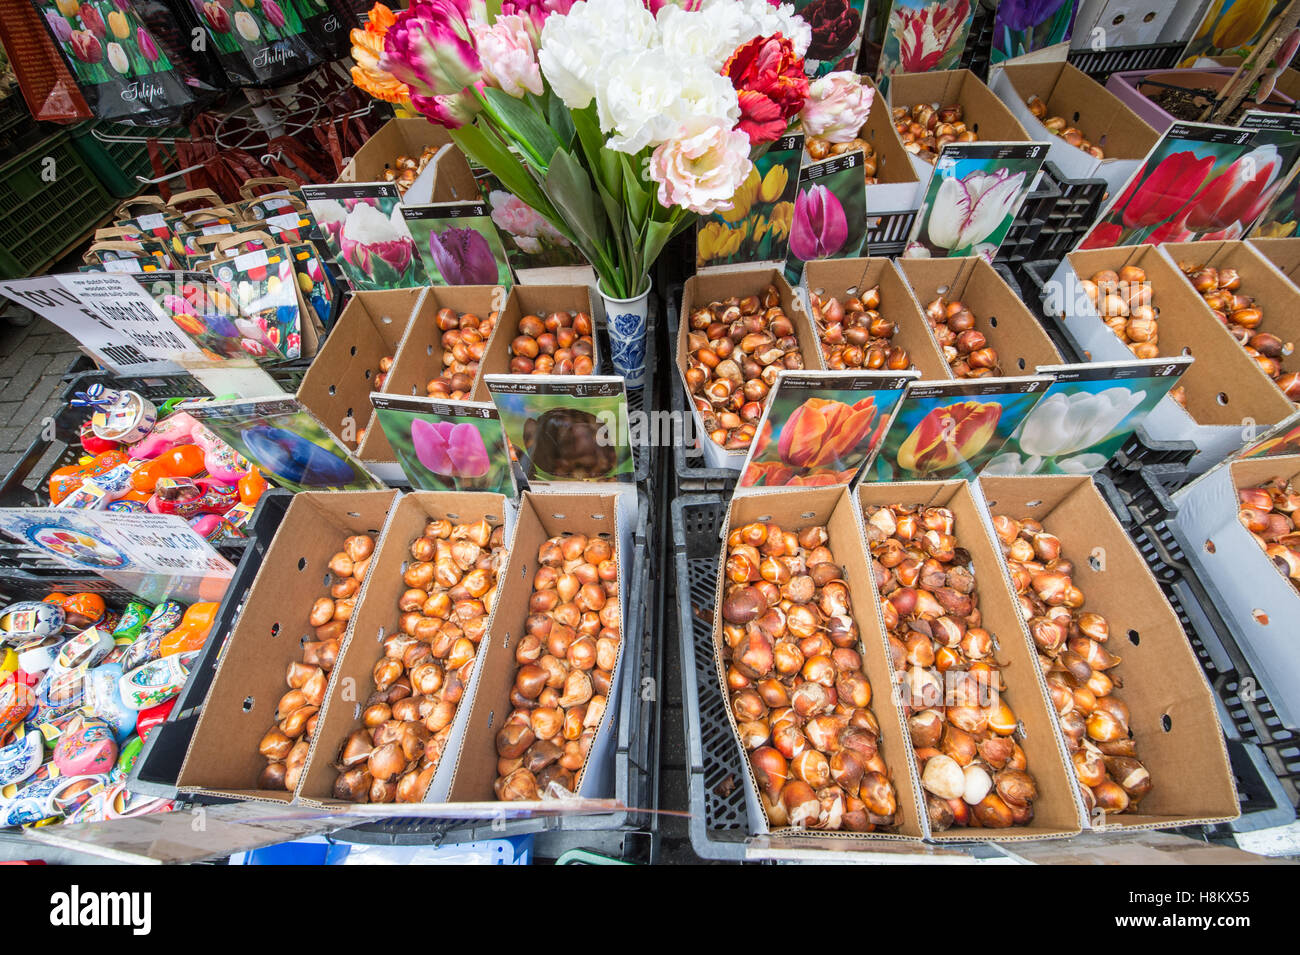 Amsterdam, Niederlande große Auswahl an verschiedenen farbigen Blumensamen und Blumenzwiebeln für den Verkauf in einem Outdoor-Markt. Stockfoto